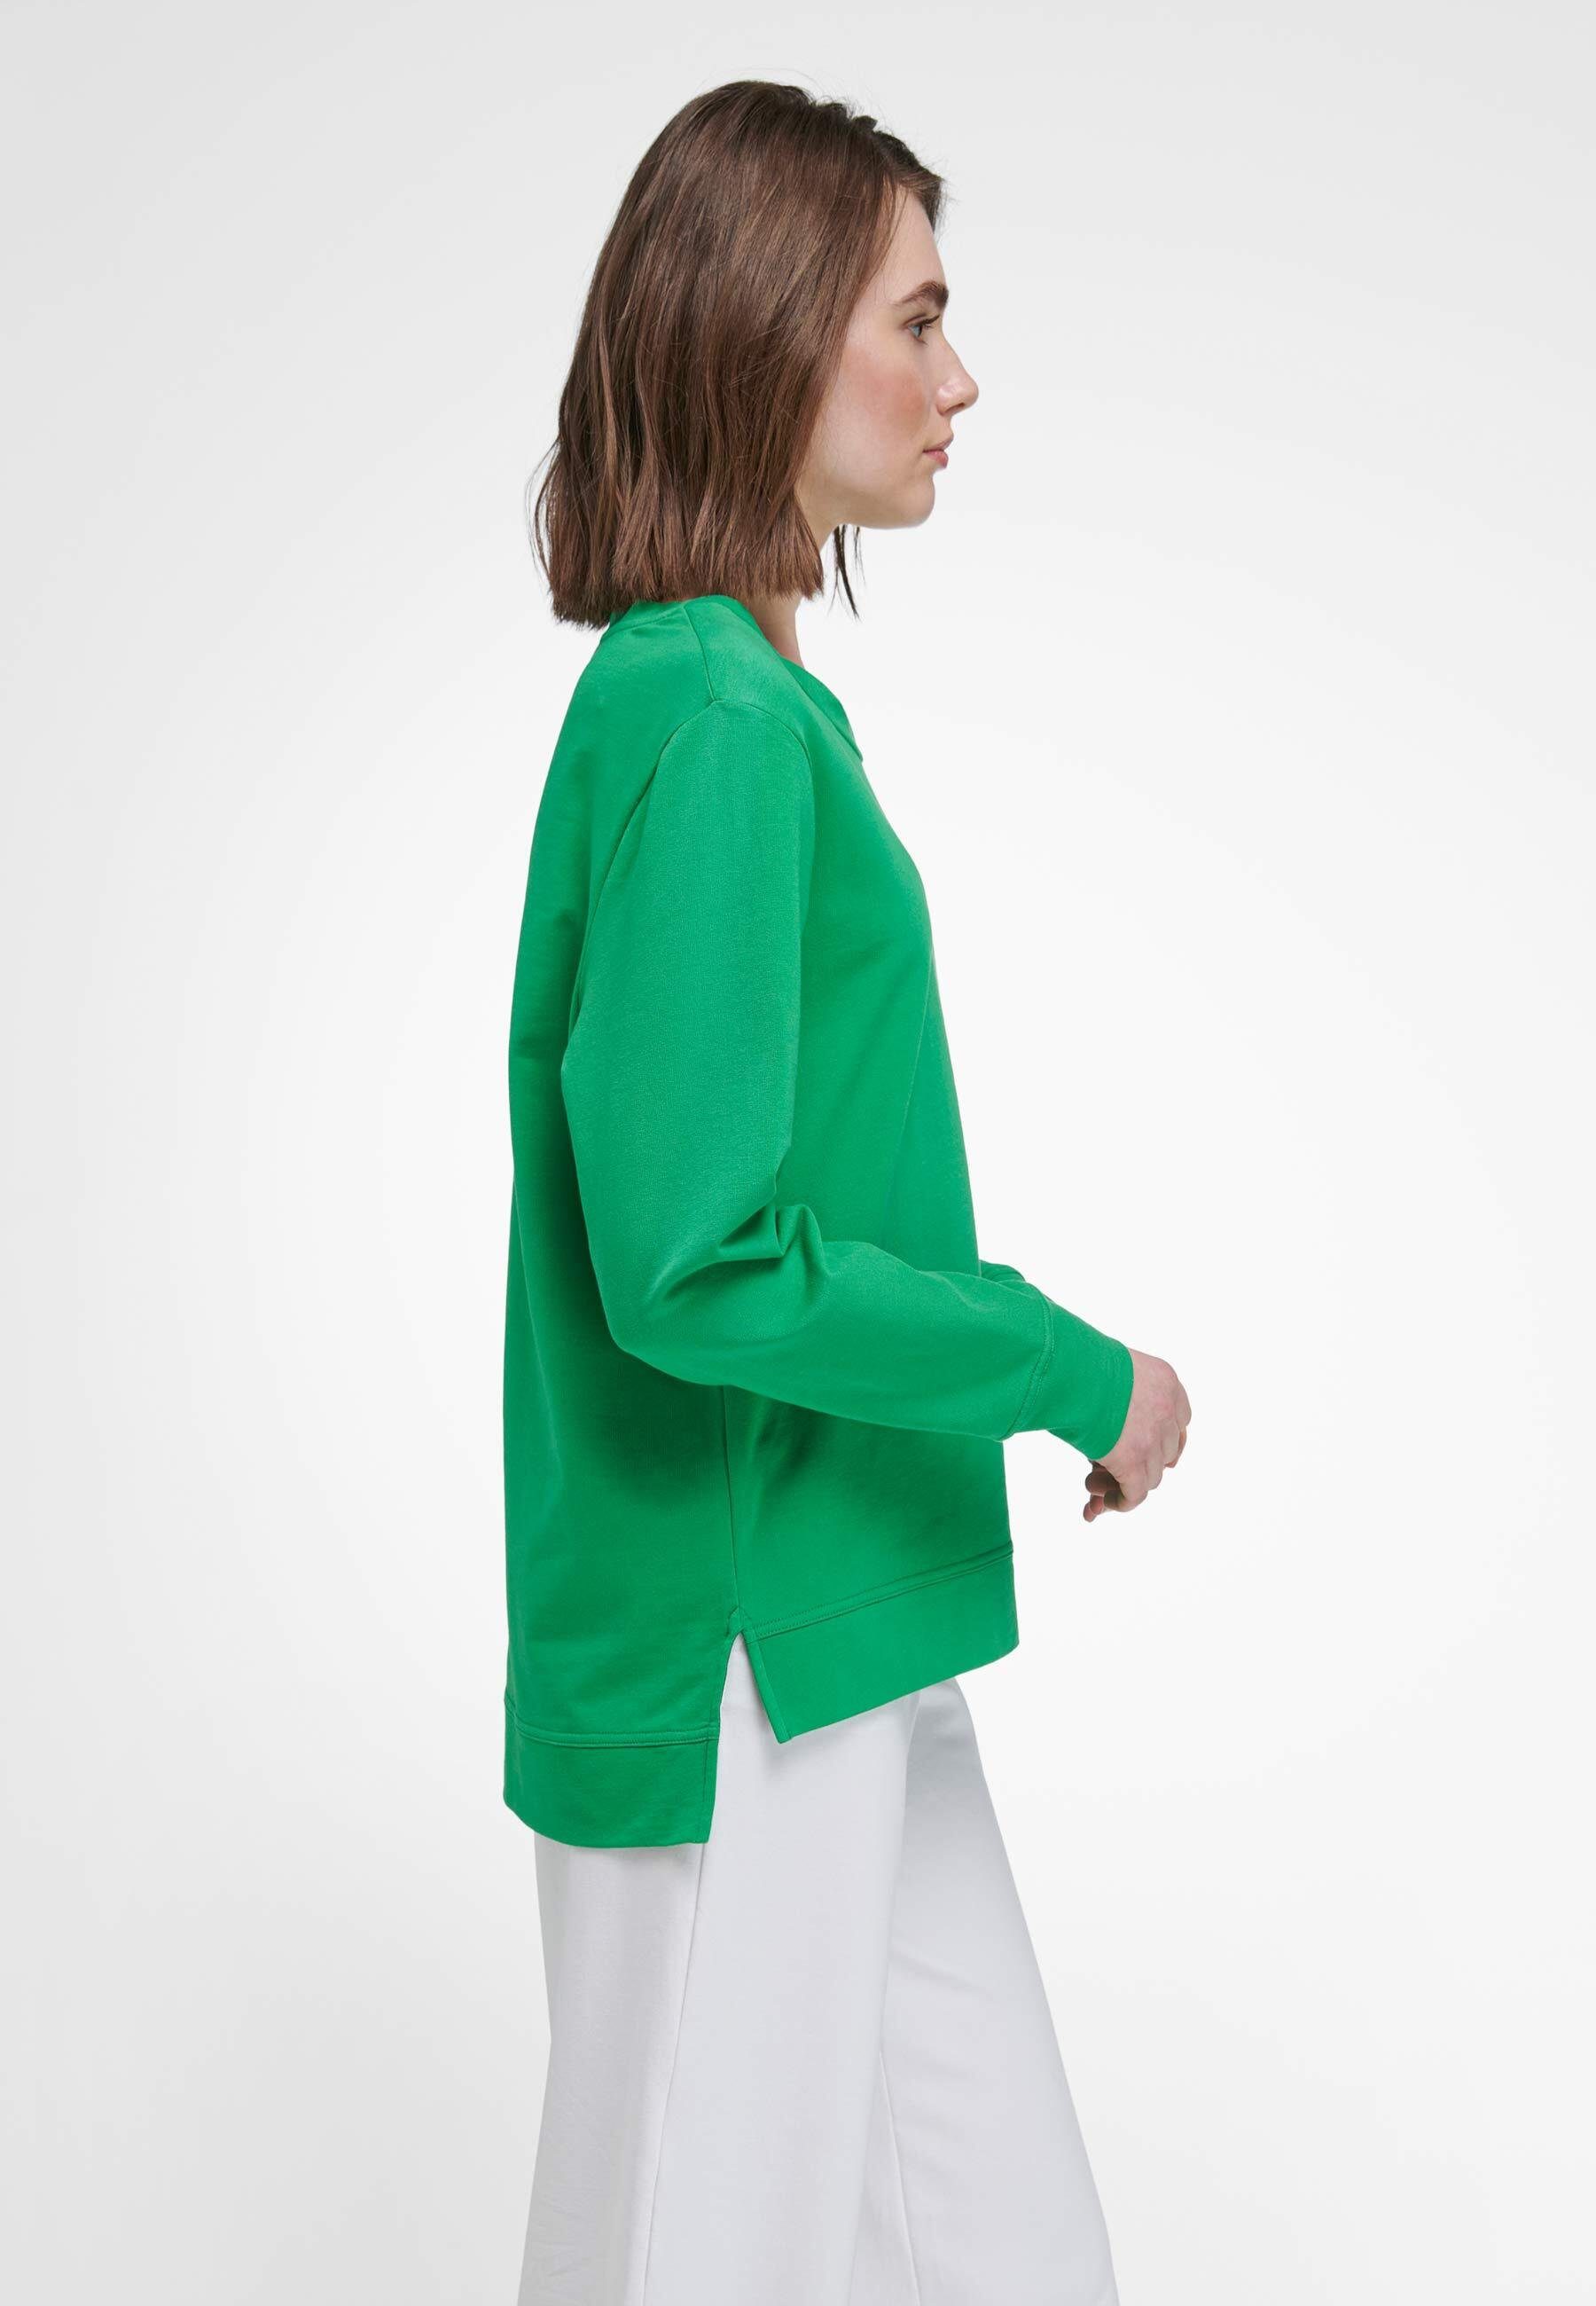 Peter Hahn Sweatshirt cotton grün